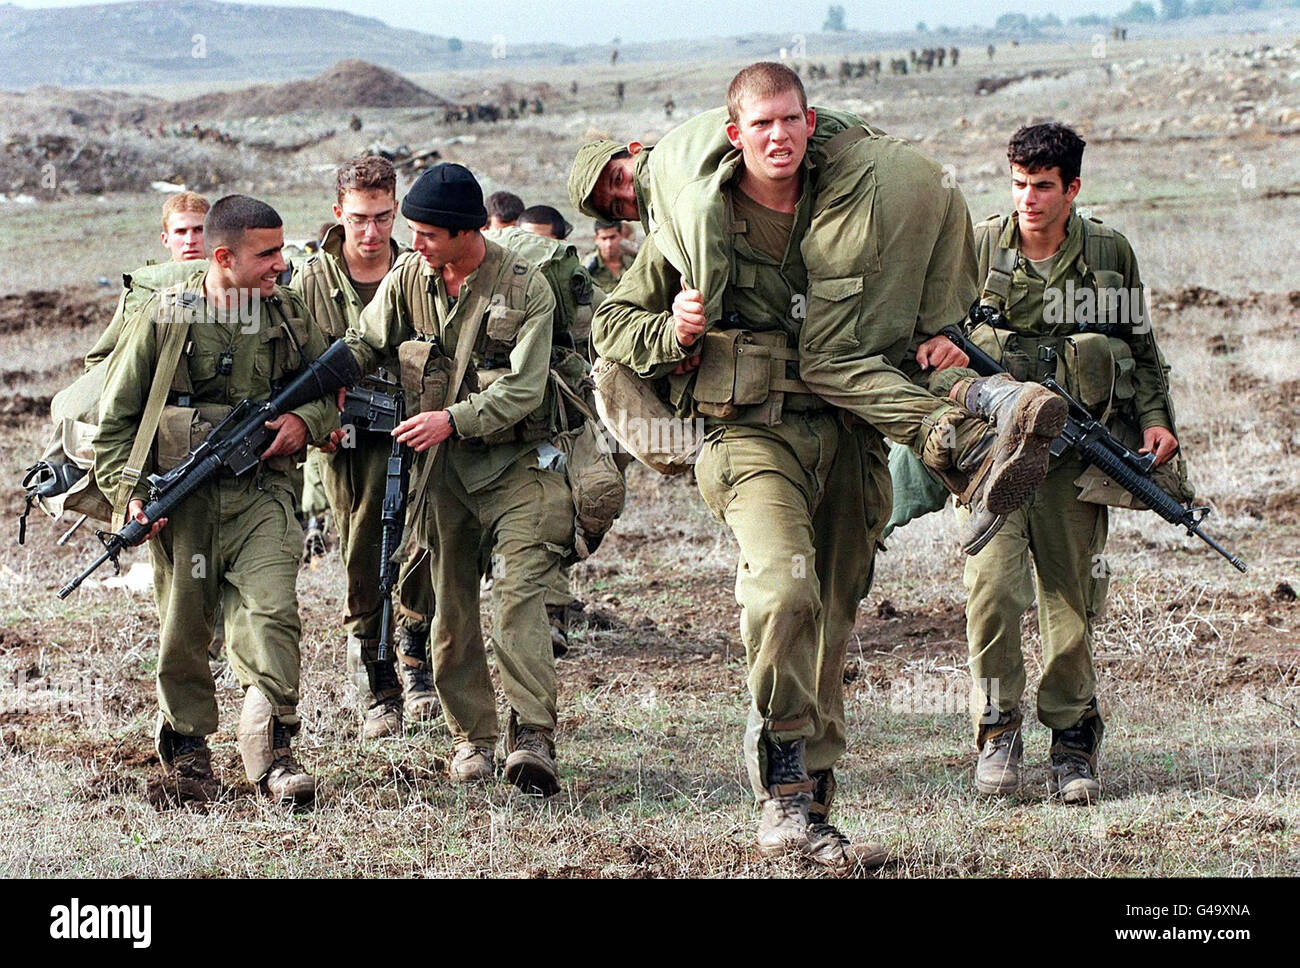 Un gruppo di soldati israeliani si dirige su una collina fangosa che porta un soldato 'ferito' nelle alture del Golan l'ultimo giorno di manovre di addestramento della brigata di Givaati, il 06 novembre 1997. La Siria ha detto questa settimana che potrebbe raggiungere un trattato di pace con Israele in tre mesi se Israele accettasse di restituire il Golan, occupato nel 1967 e successivamente annesso. I negoziati di pace tra Israele e Siria sono stati sospesi da oltre un anno. Foto Stock